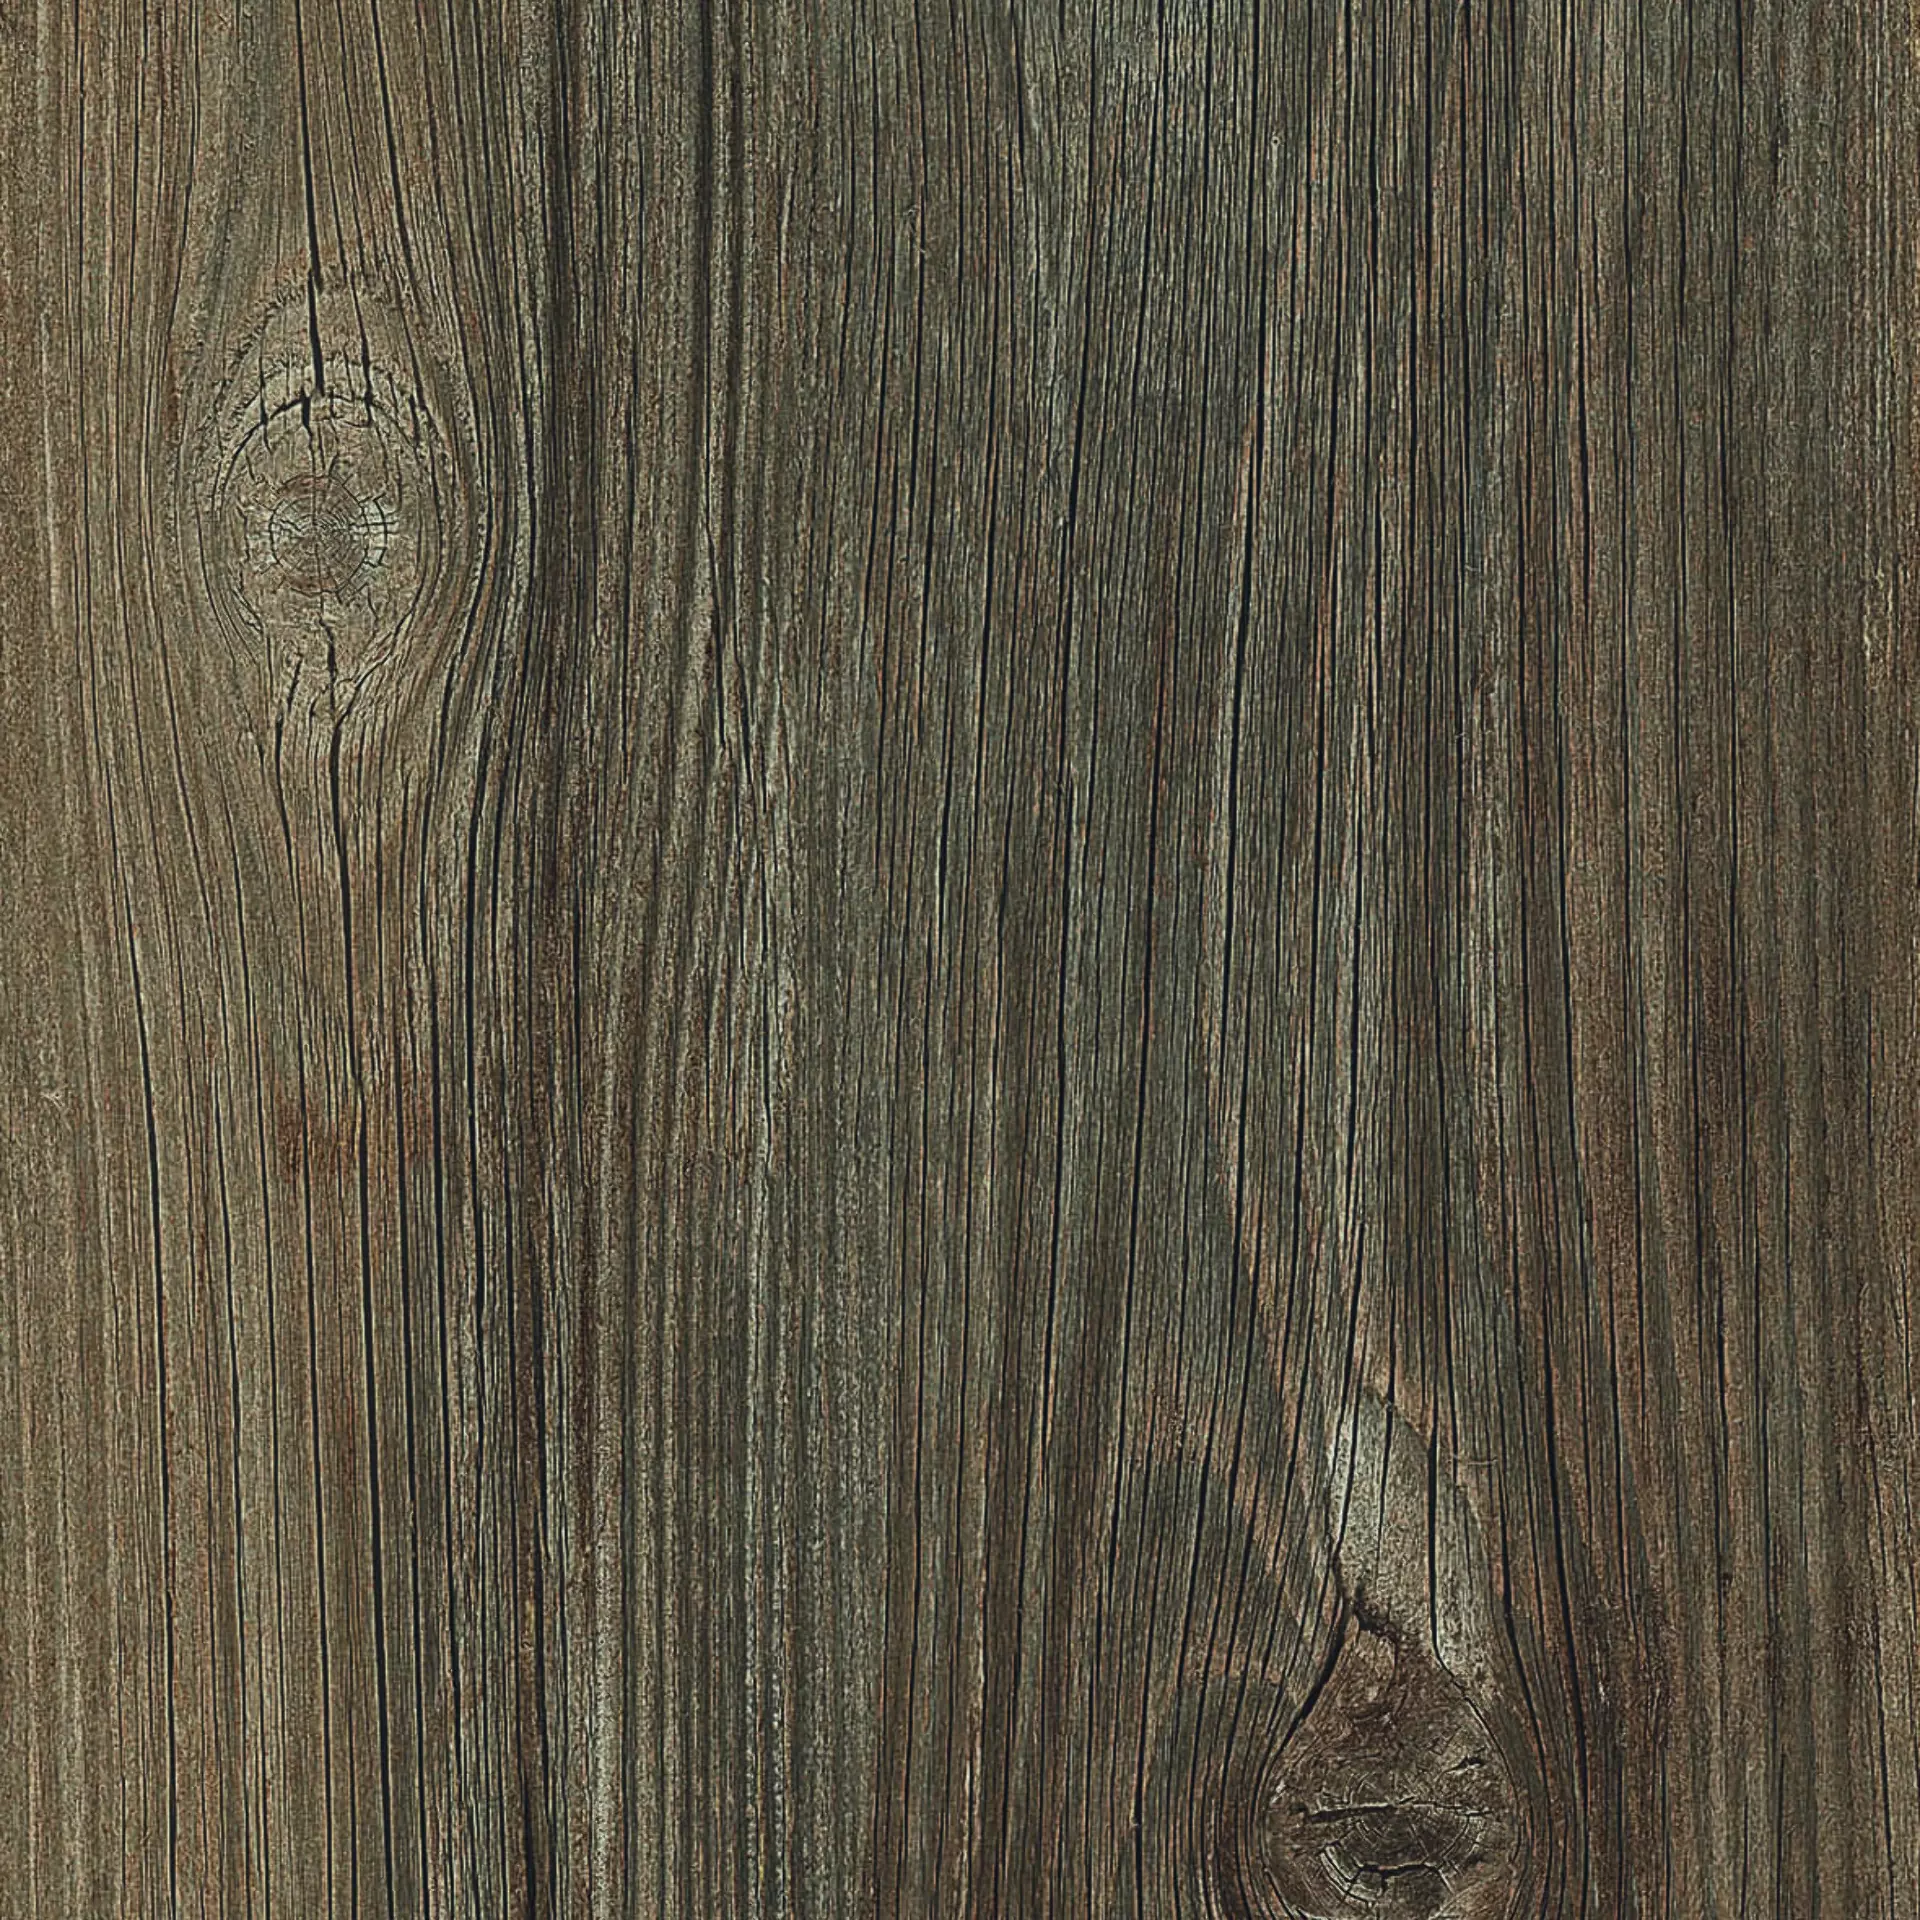 Casalgrande Country Wood Marrone Naturale – Matt 10100165 20x120cm rectified 9mm